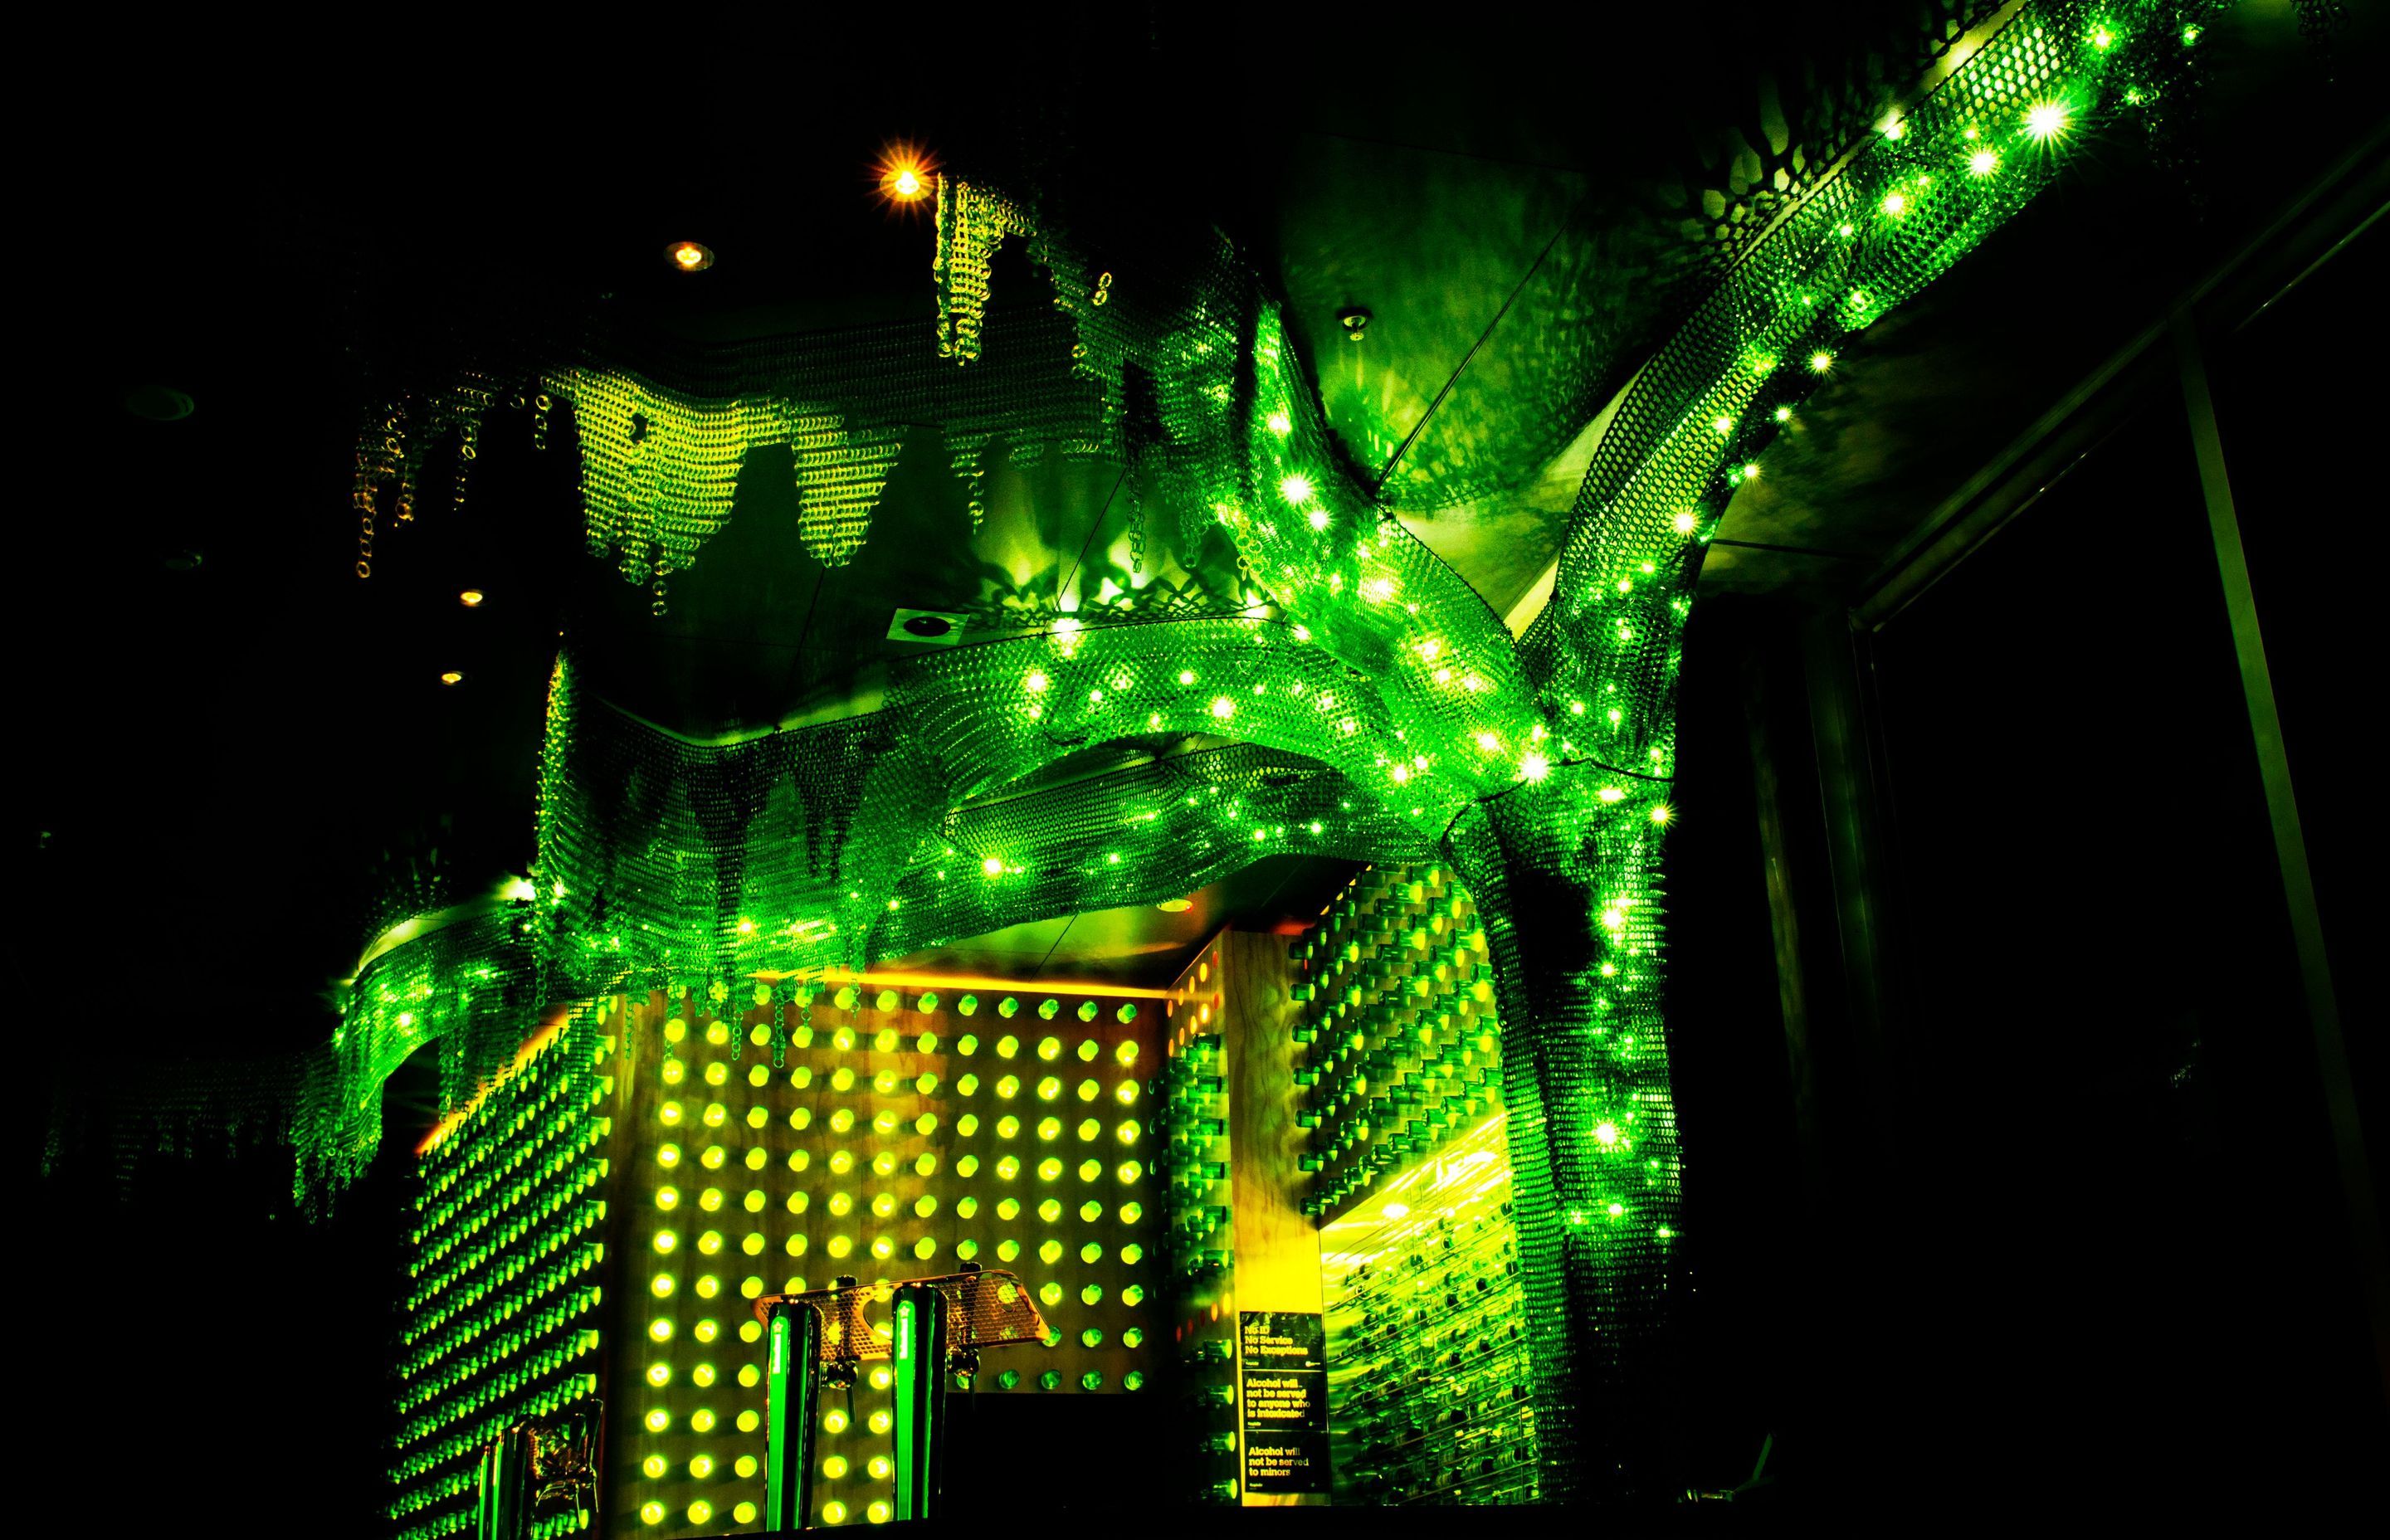 Heineken Green Room